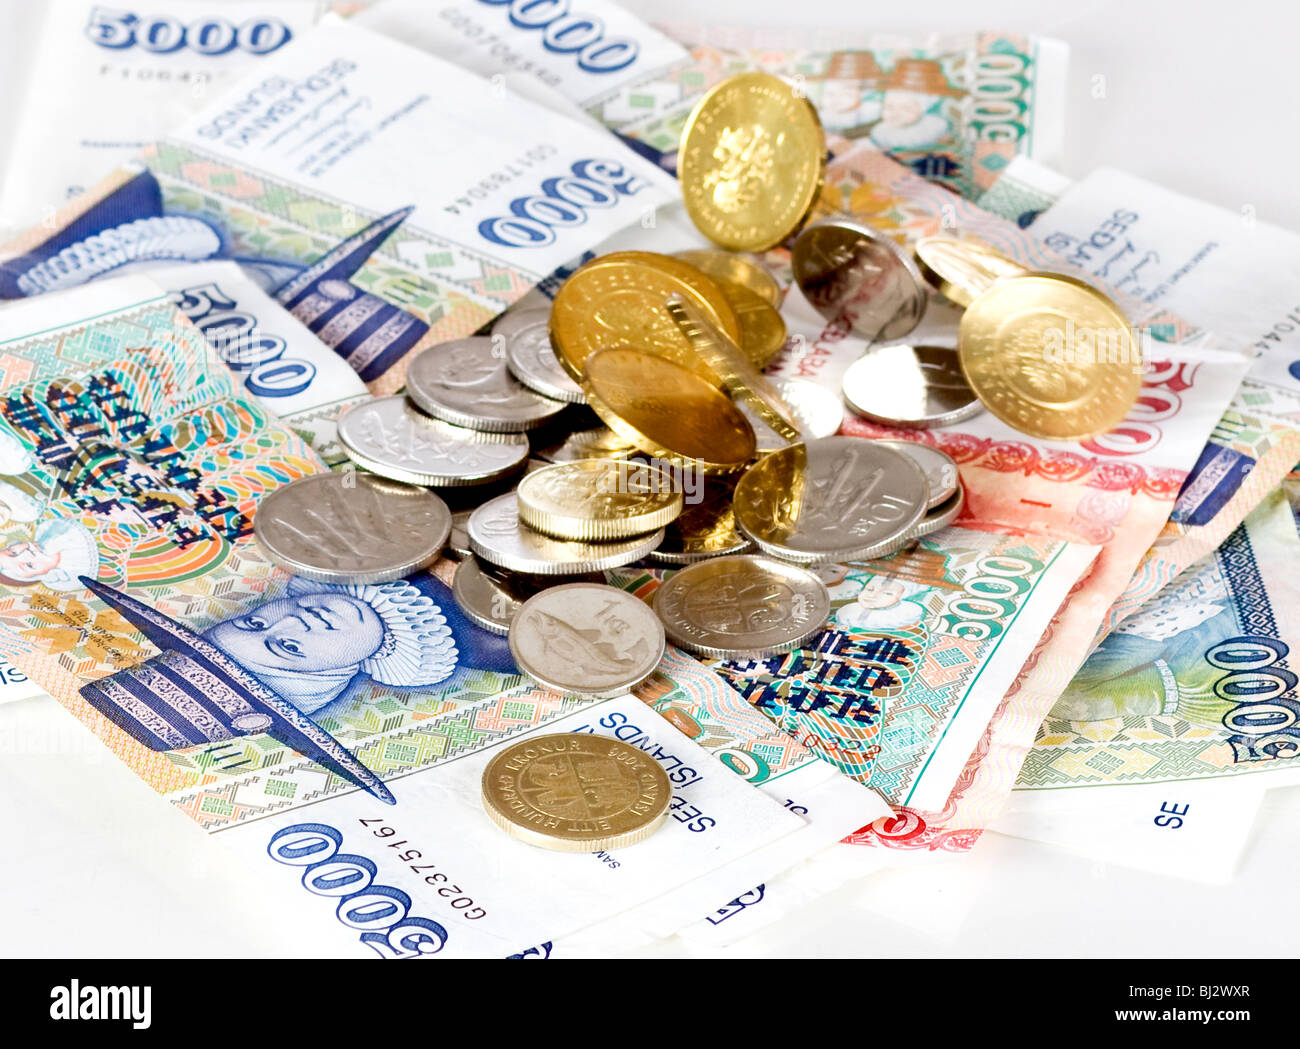 Monete e banconote Icelandic Krona isolato su sfondo bianco Foto Stock